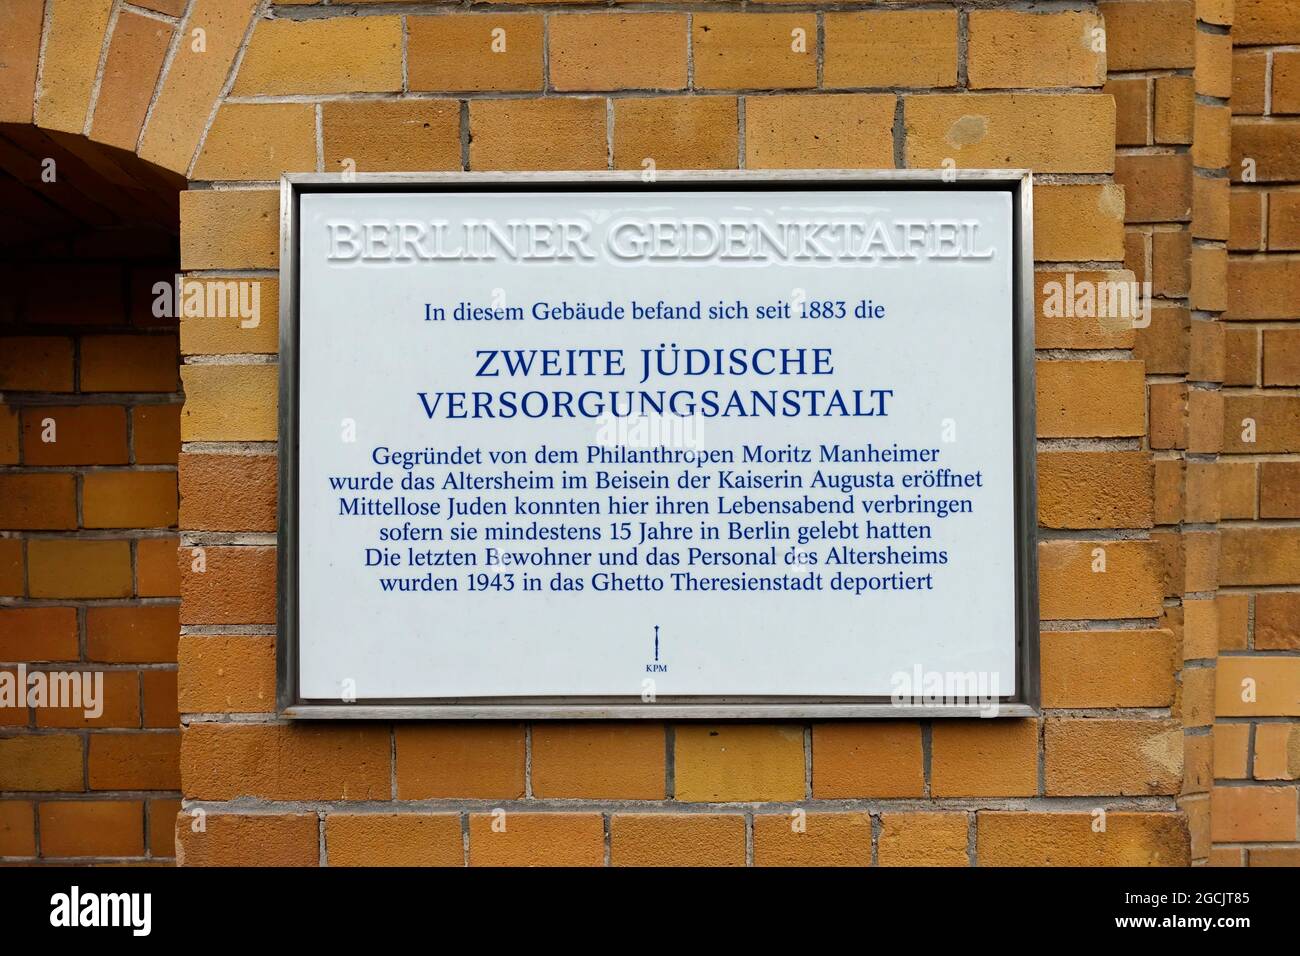 Second Jewish pension institution, Zweite jüdische Versorgungsanstalt, Berlin Stock Photo